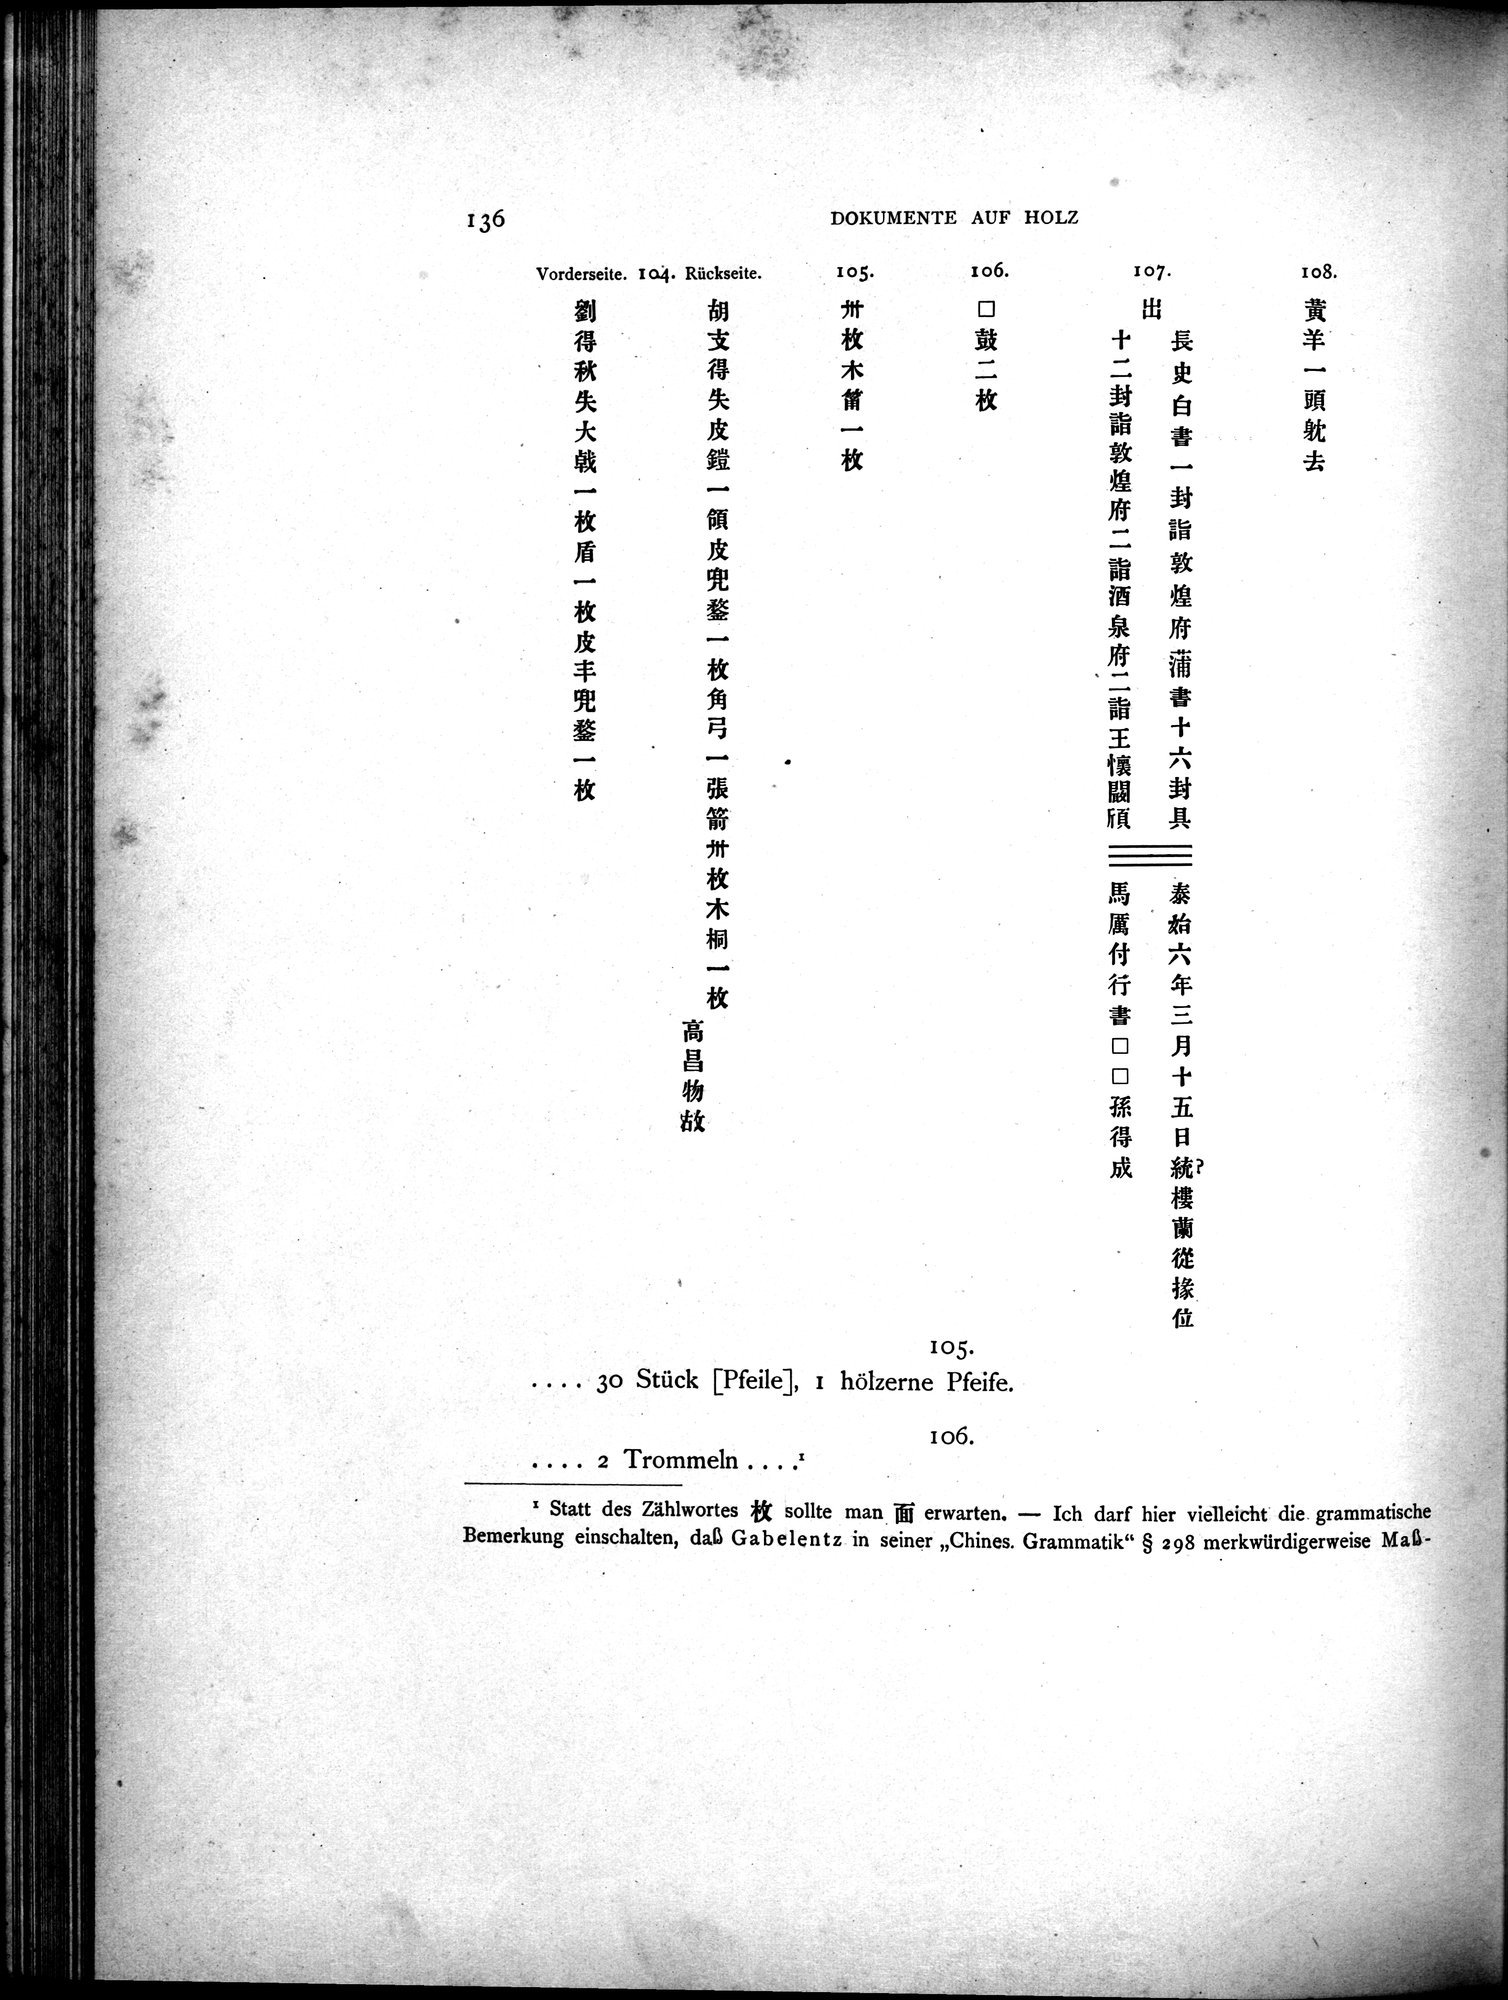 Die Chinesischen Handschriften- und sonstigen Kleinfunde Sven Hedins in Lou-lan : vol.1 / Page 160 (Grayscale High Resolution Image)